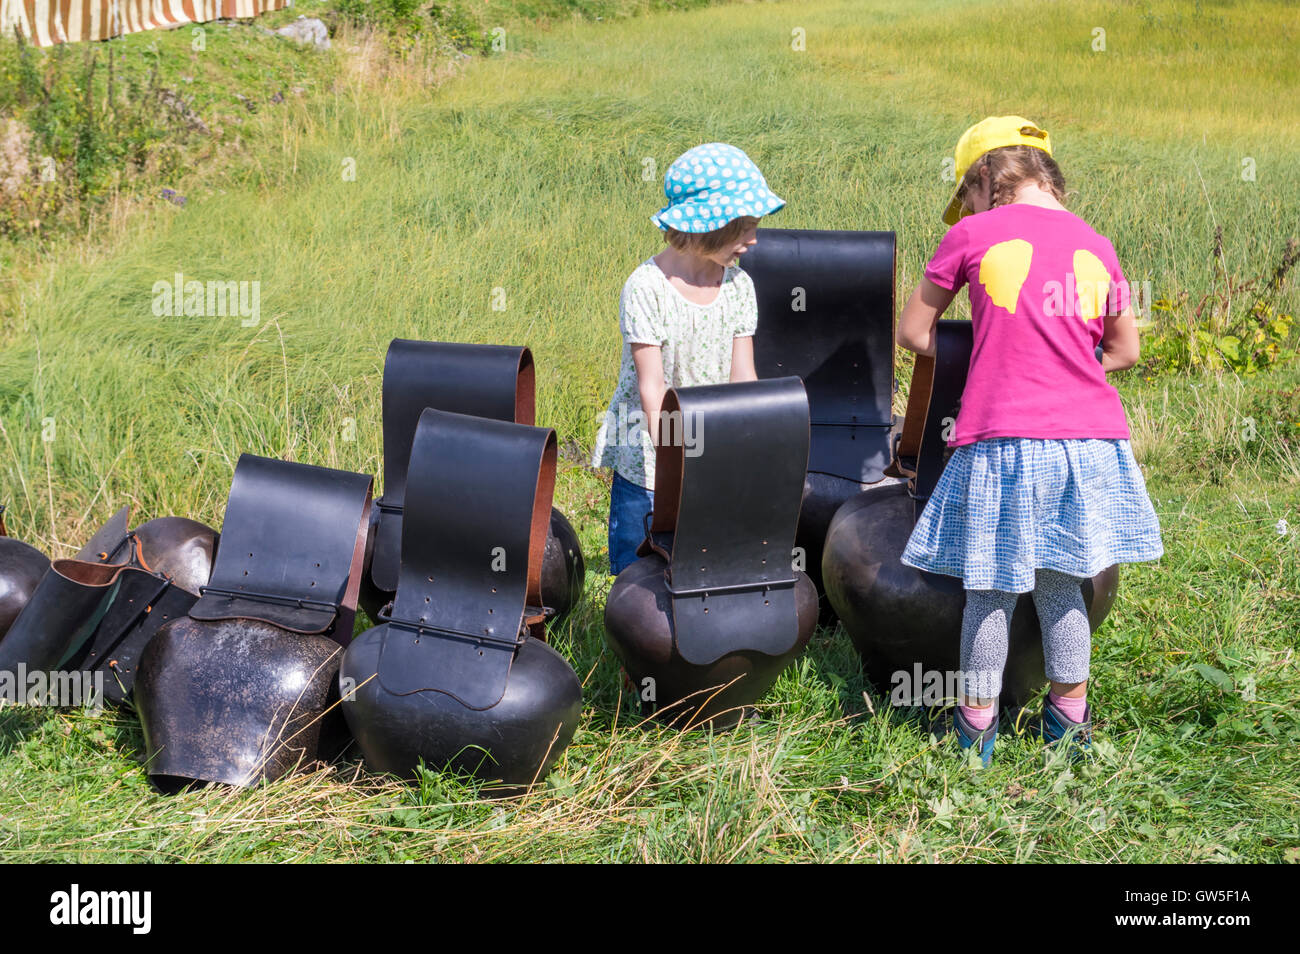 Zwei pre-teen Mädchen spielen mit großen "Trychlen", gehämmert Blech  Kuhglocken in der Schweiz beliebt Stockfotografie - Alamy